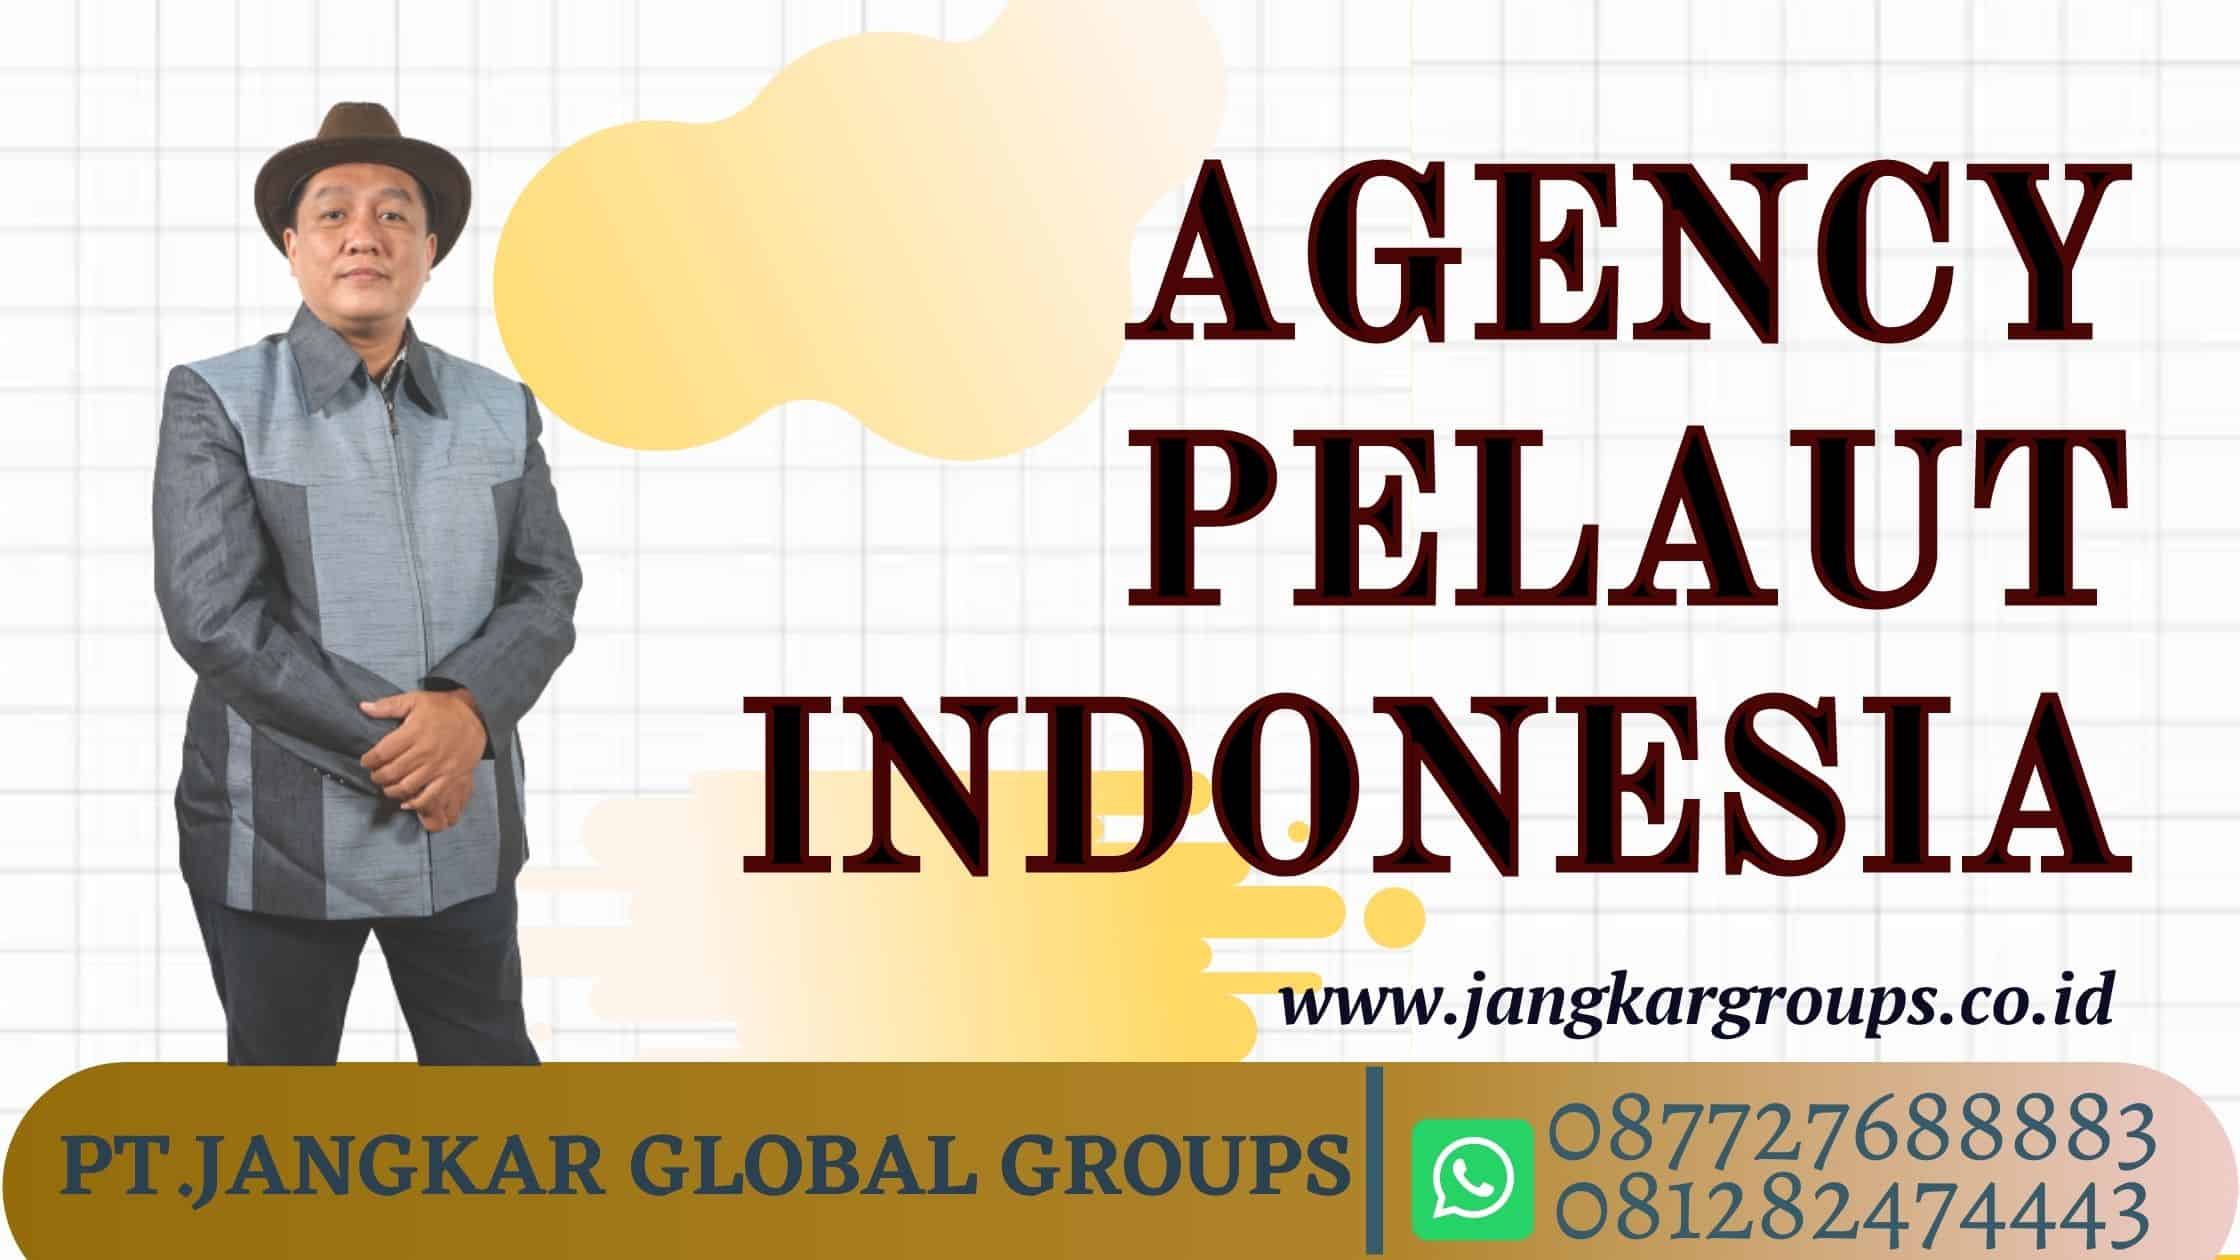 Agency Pelaut Indonesia